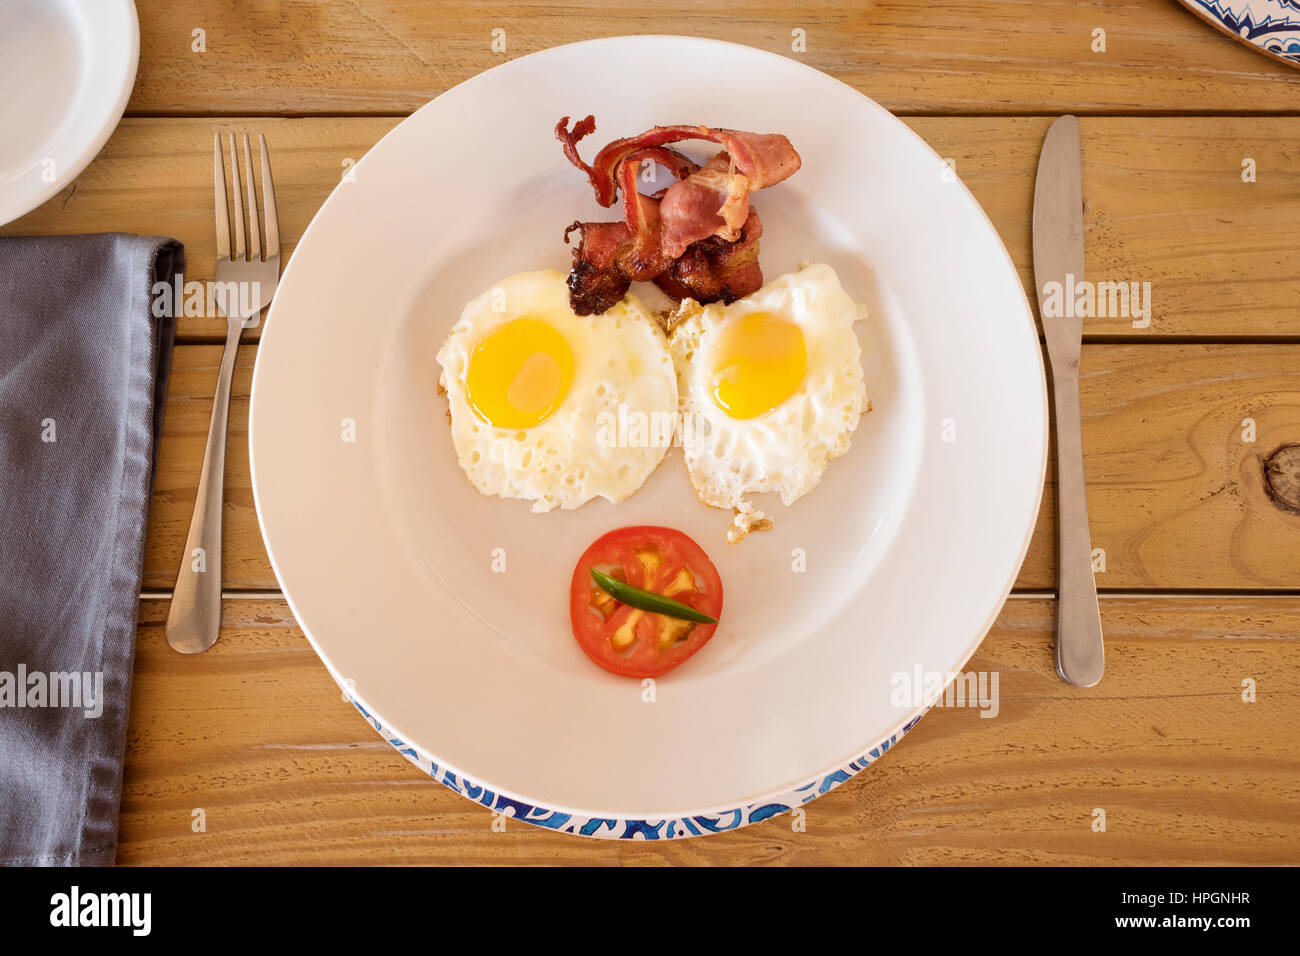 Un petit-déjeuner servi dans un camp en Namibie. Sur la plaque sont deux œufs frits, Sunny Side Up, certains bacon croustillant et une demi-tomate. Banque D'Images